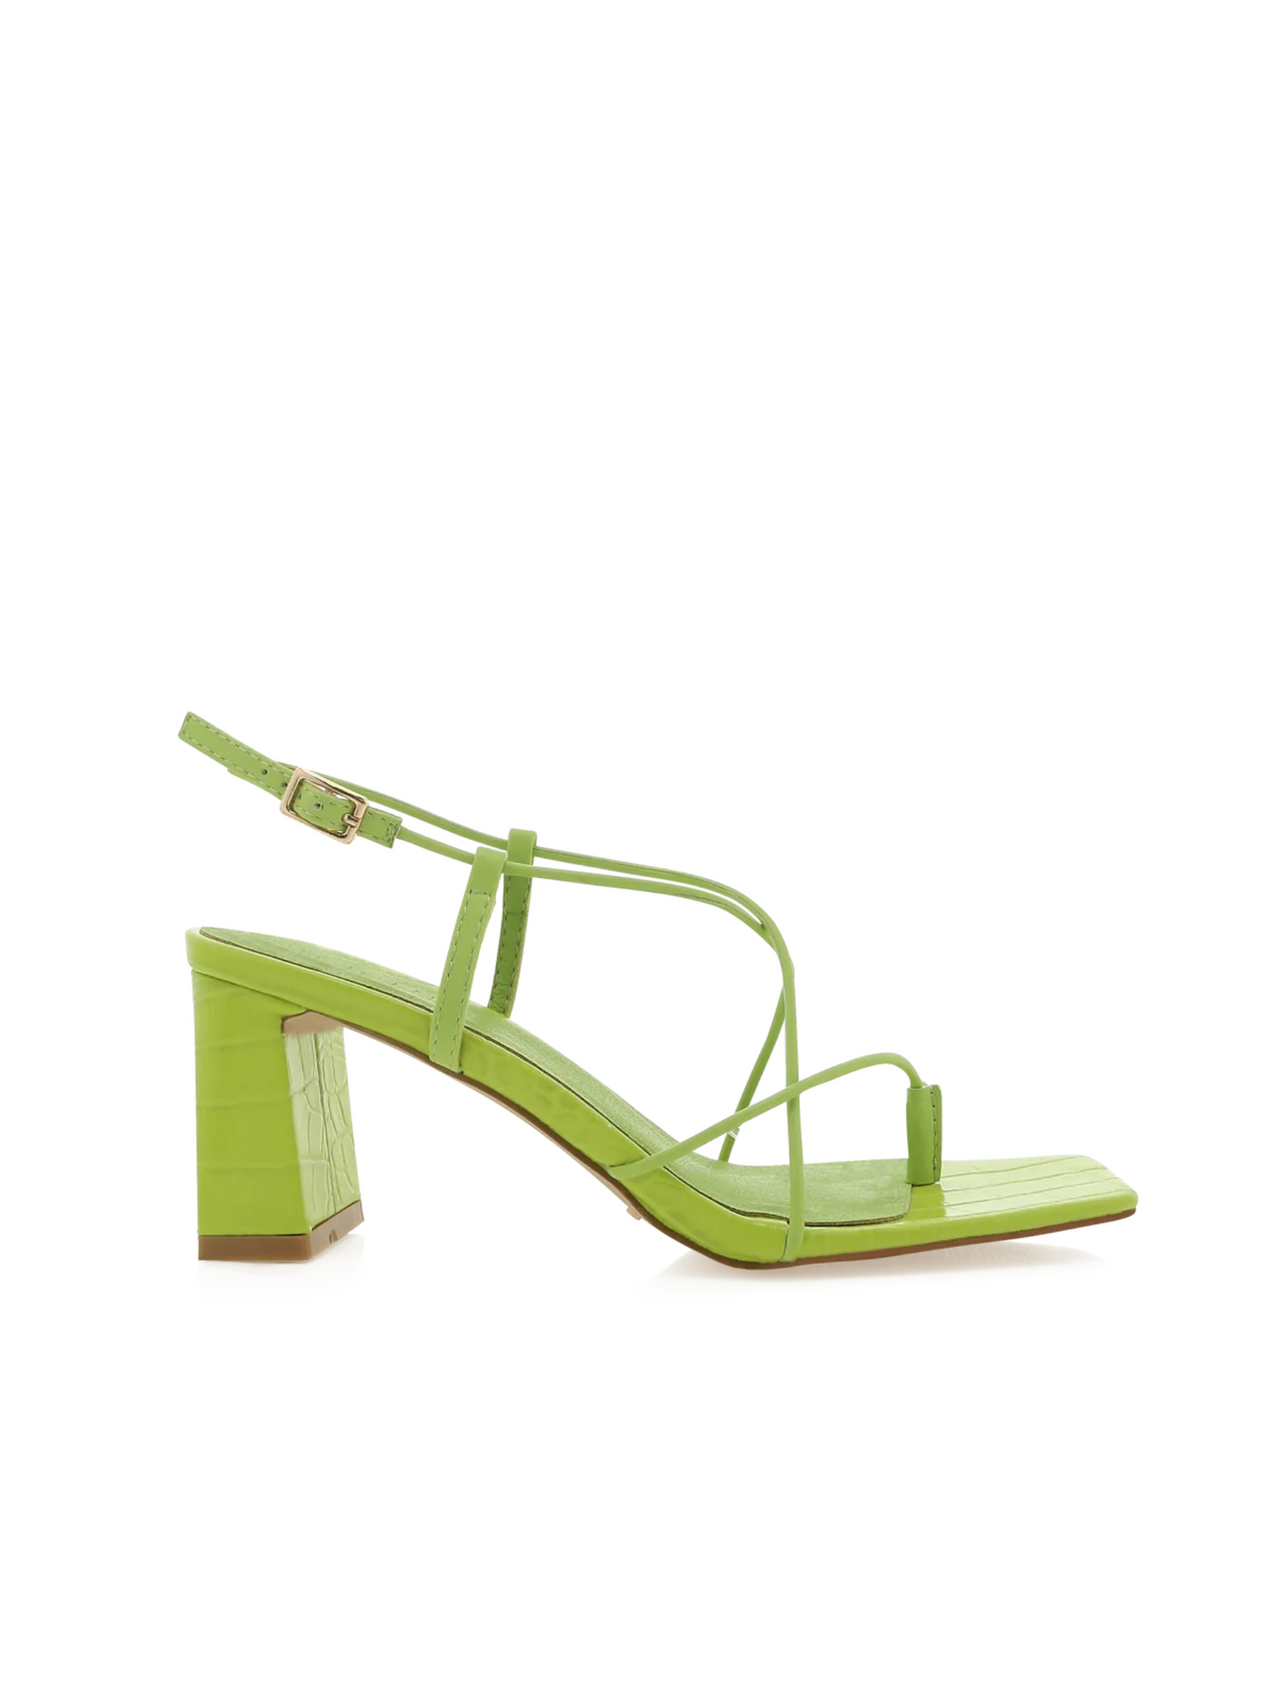 Ilaia Croc Strappy Sandal Acid, Heel Shoe by Billini | LIT Boutique